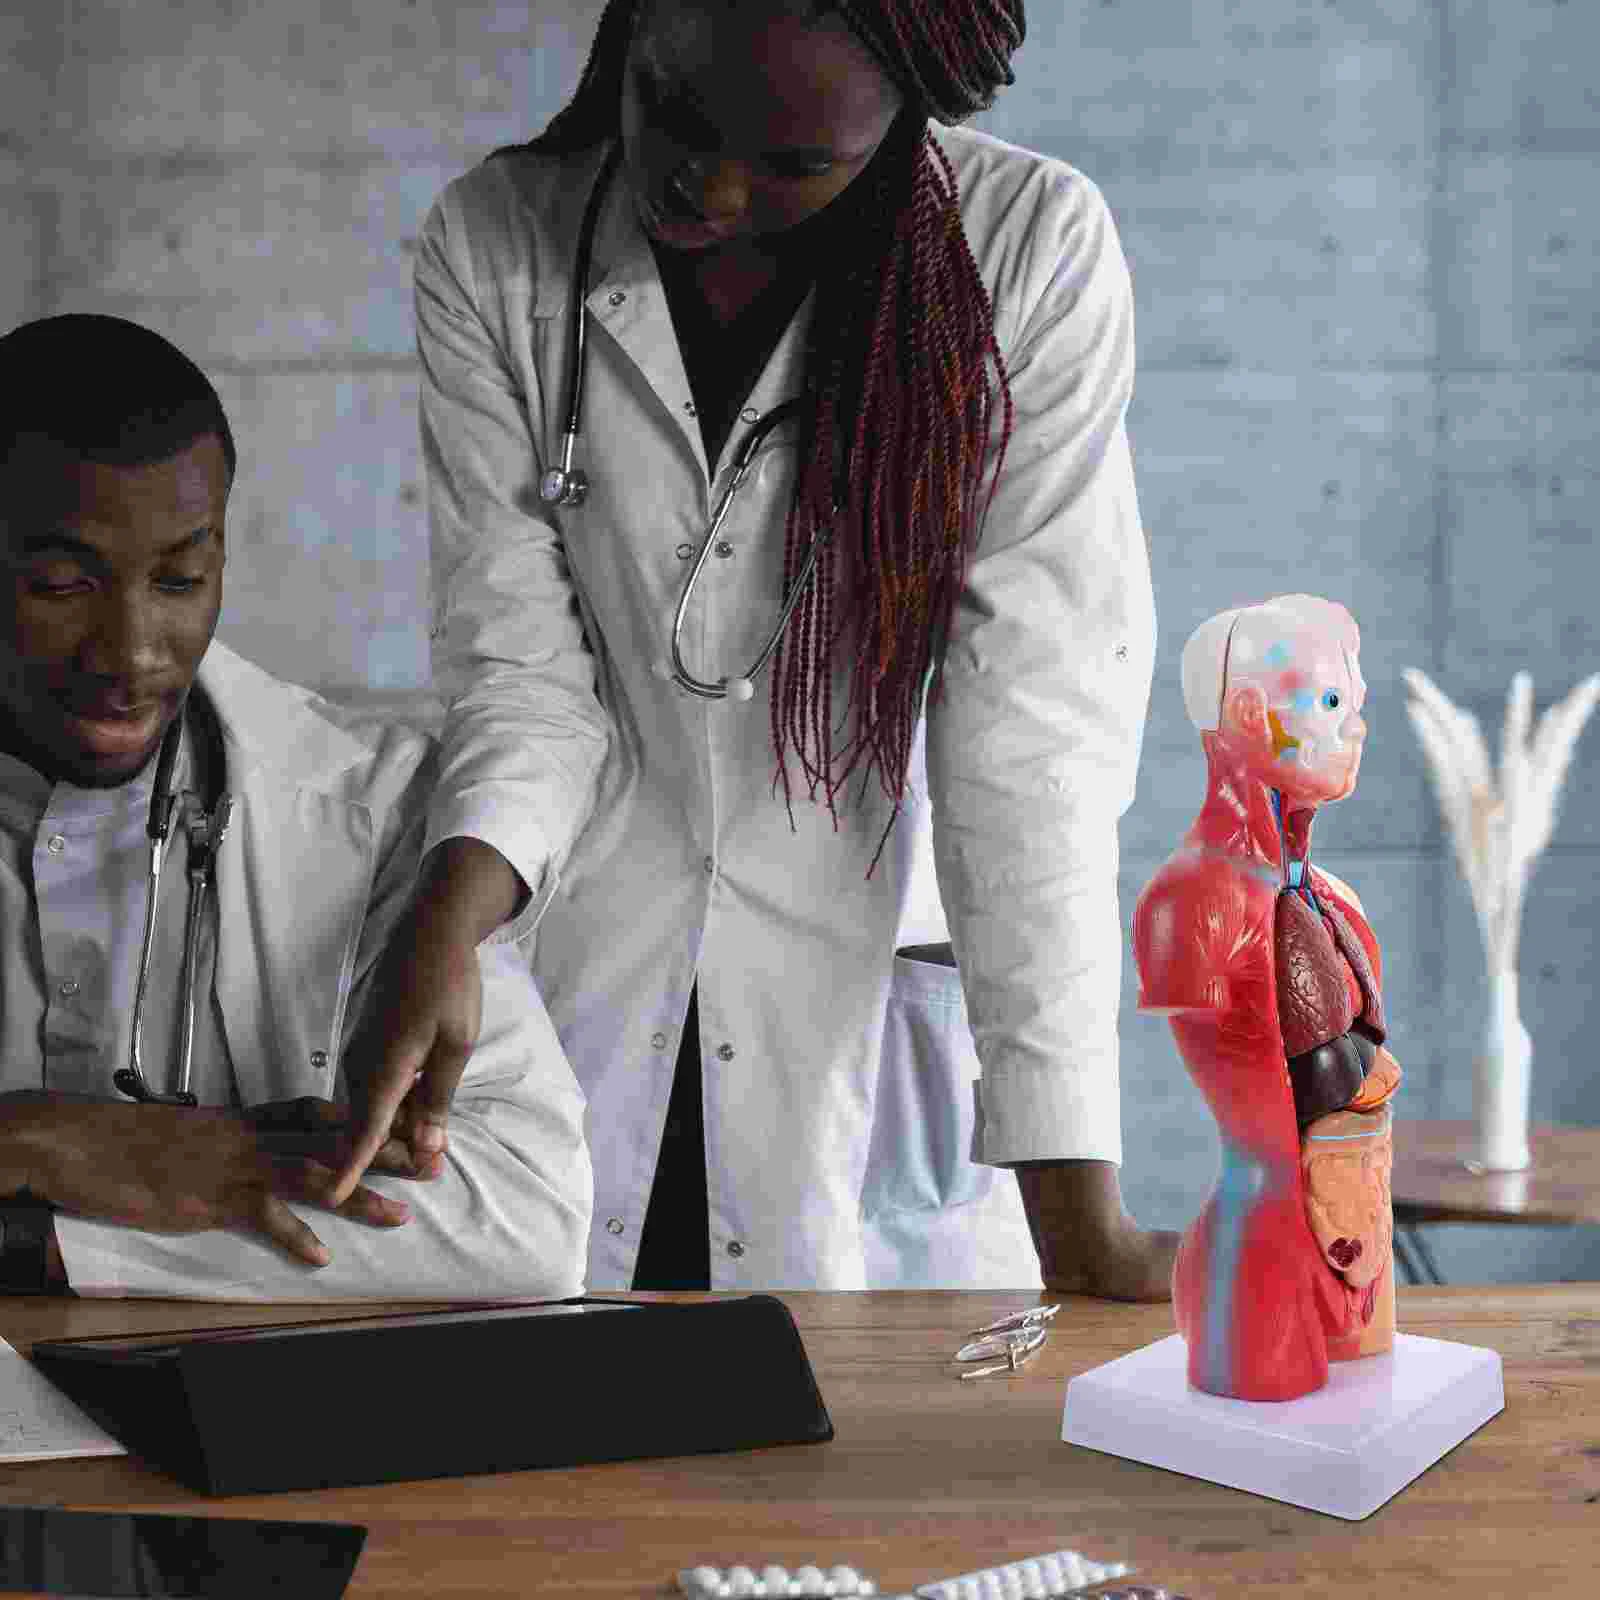 İnsan Torso Vücut Modeli Playset Öğretim Anatomi Organları Modeli Okul Eğitim aracı Çocuklar İnsan Vücudu Hemşirelik Torso Anatomik Görüntü 1